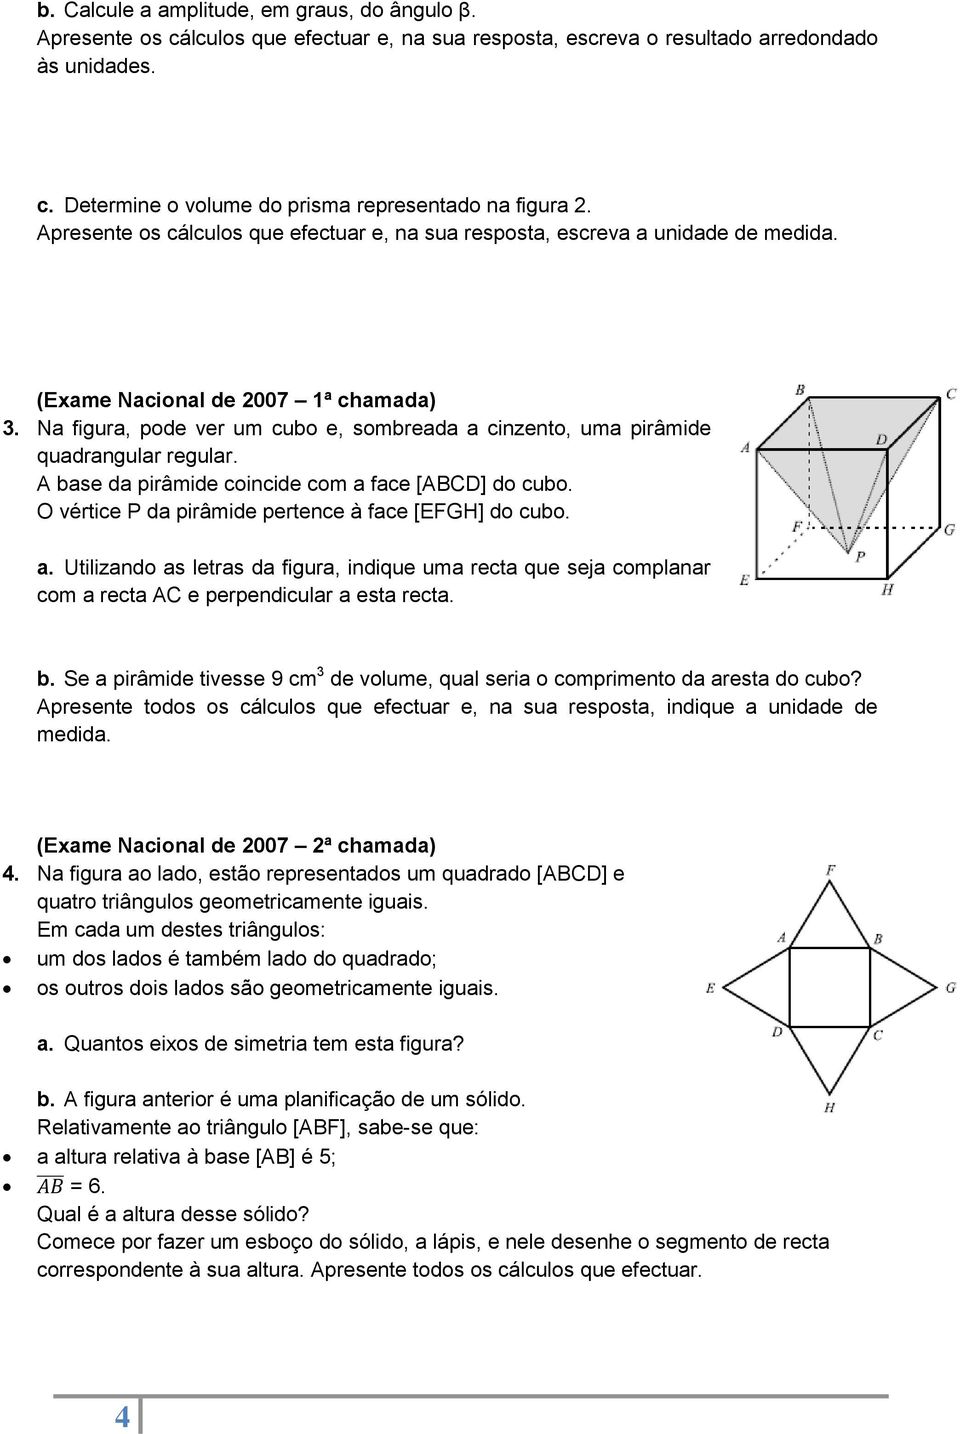 Na figura, pode ver um cubo e, sombreada a cinzento, uma pirâmide quadrangular regular. A base da pirâmide coincide com a face [ABCD] do cubo. O vértice P da pirâmide pertence à face [EFGH] do cubo.